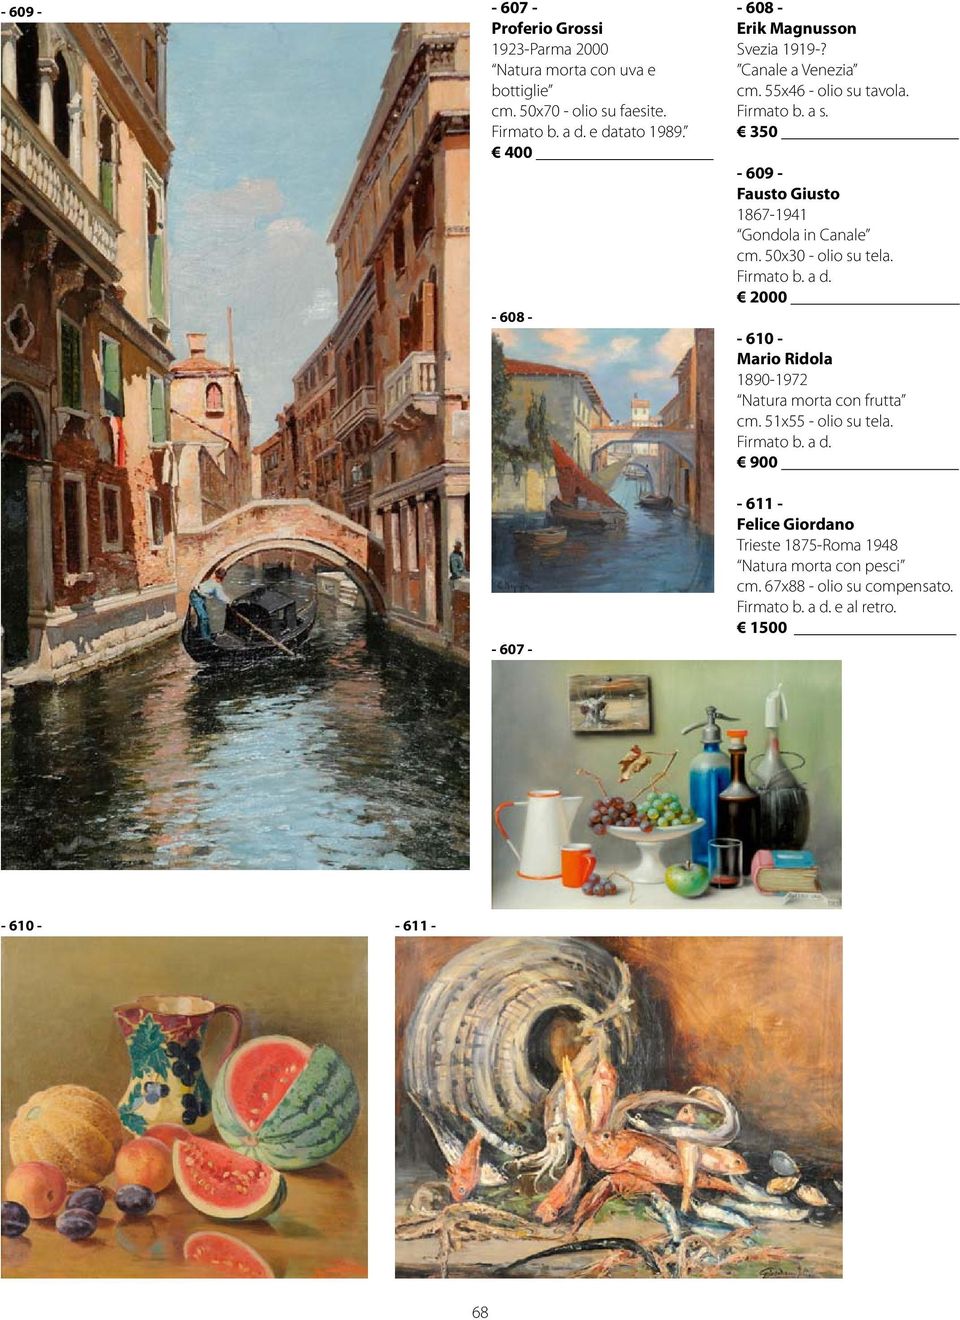 350-609 - Fausto Giusto 1867-1941 Gondola in Canale cm. 50x30 - olio su tela.